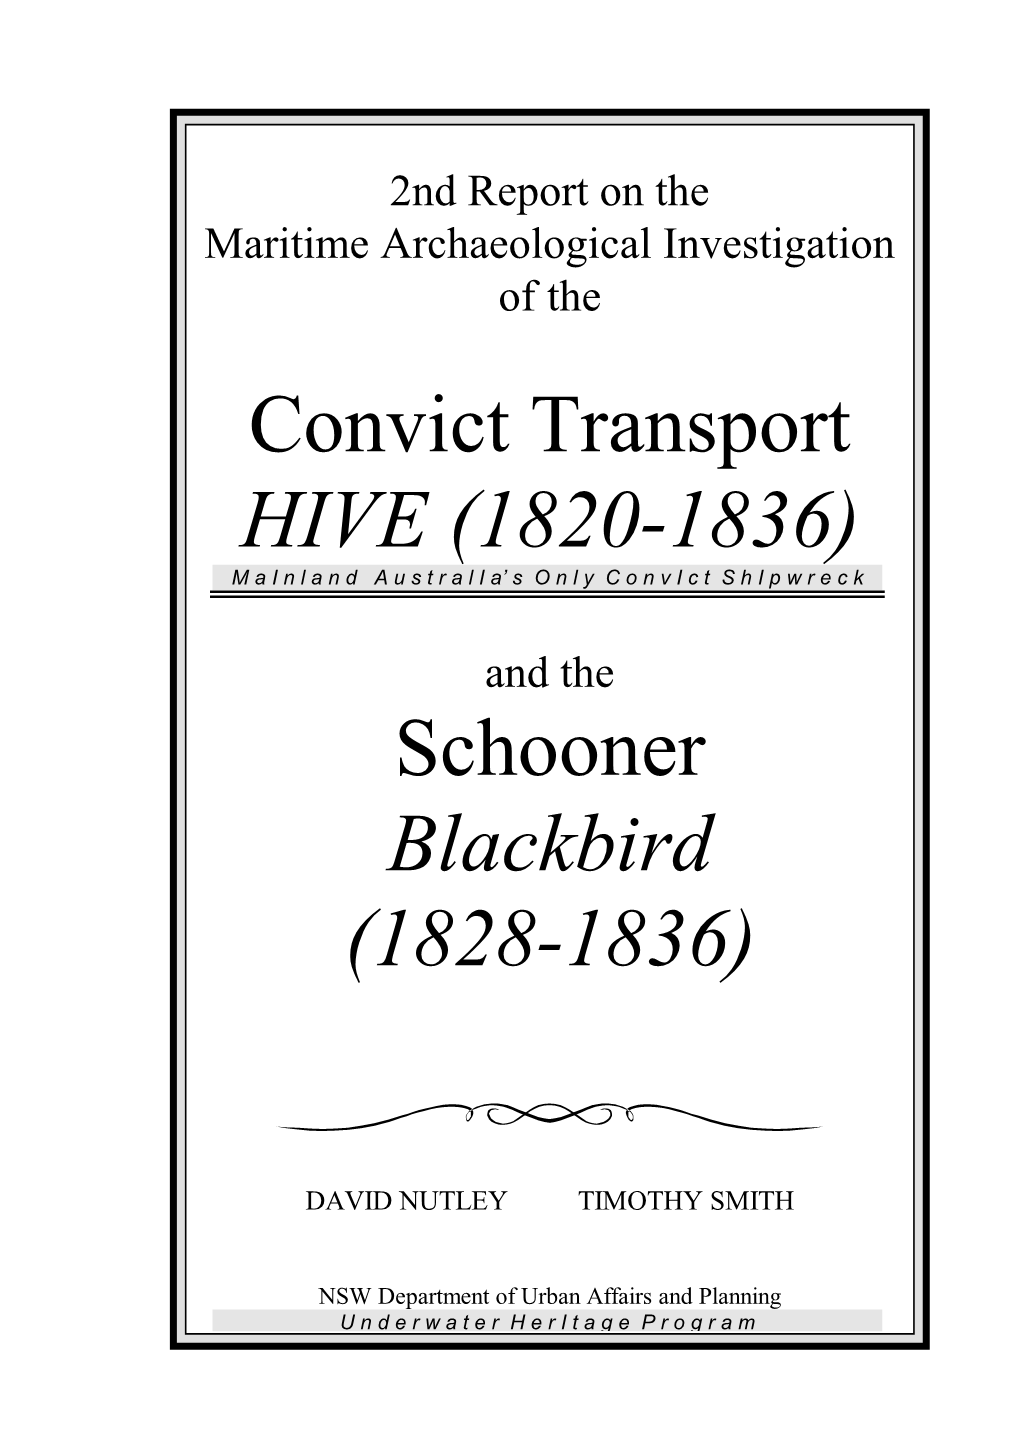 Convict Transport HIVE (1820-1836) Schooner Blackbird